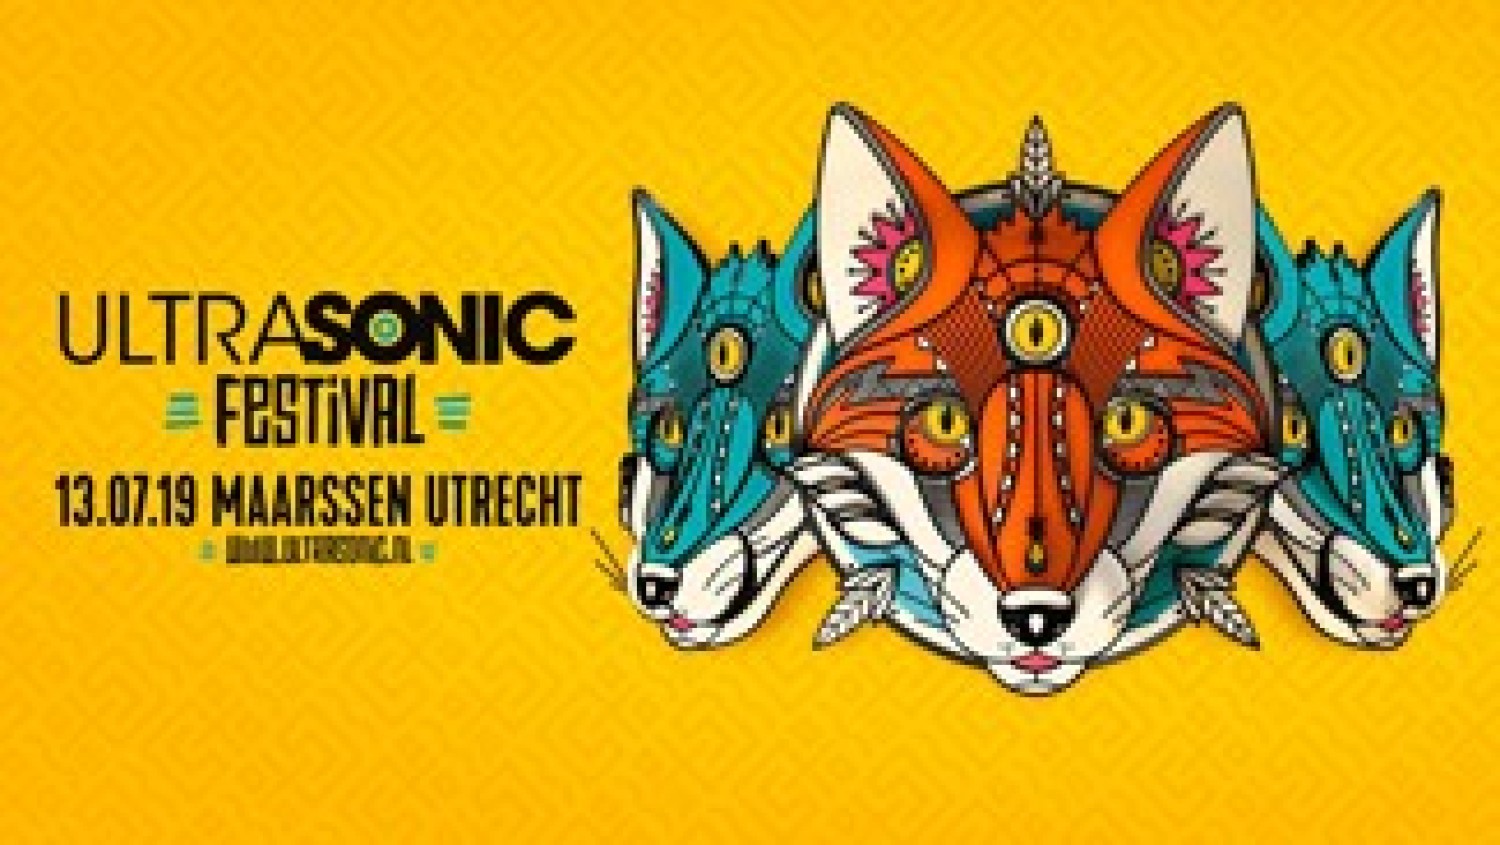 Party nieuws: Laatste info Ultrasonic Festival!